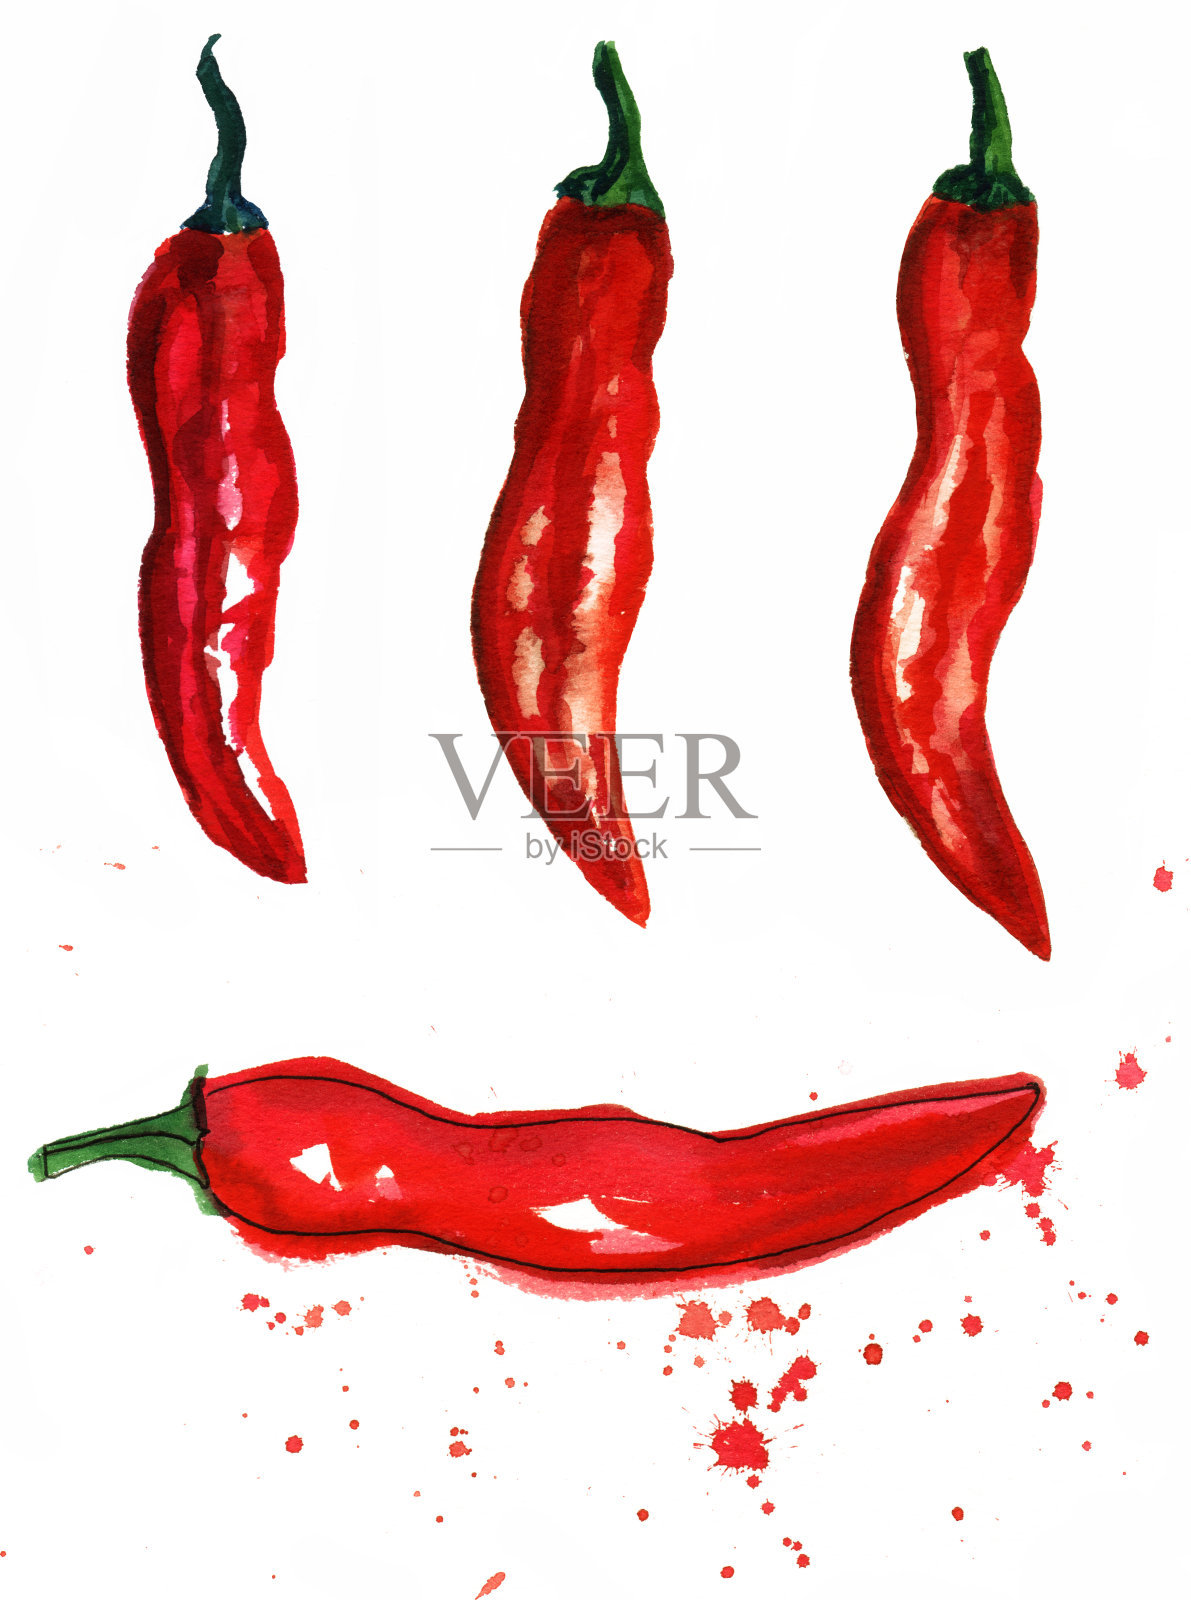 一套红辣椒的水彩画插画图片素材